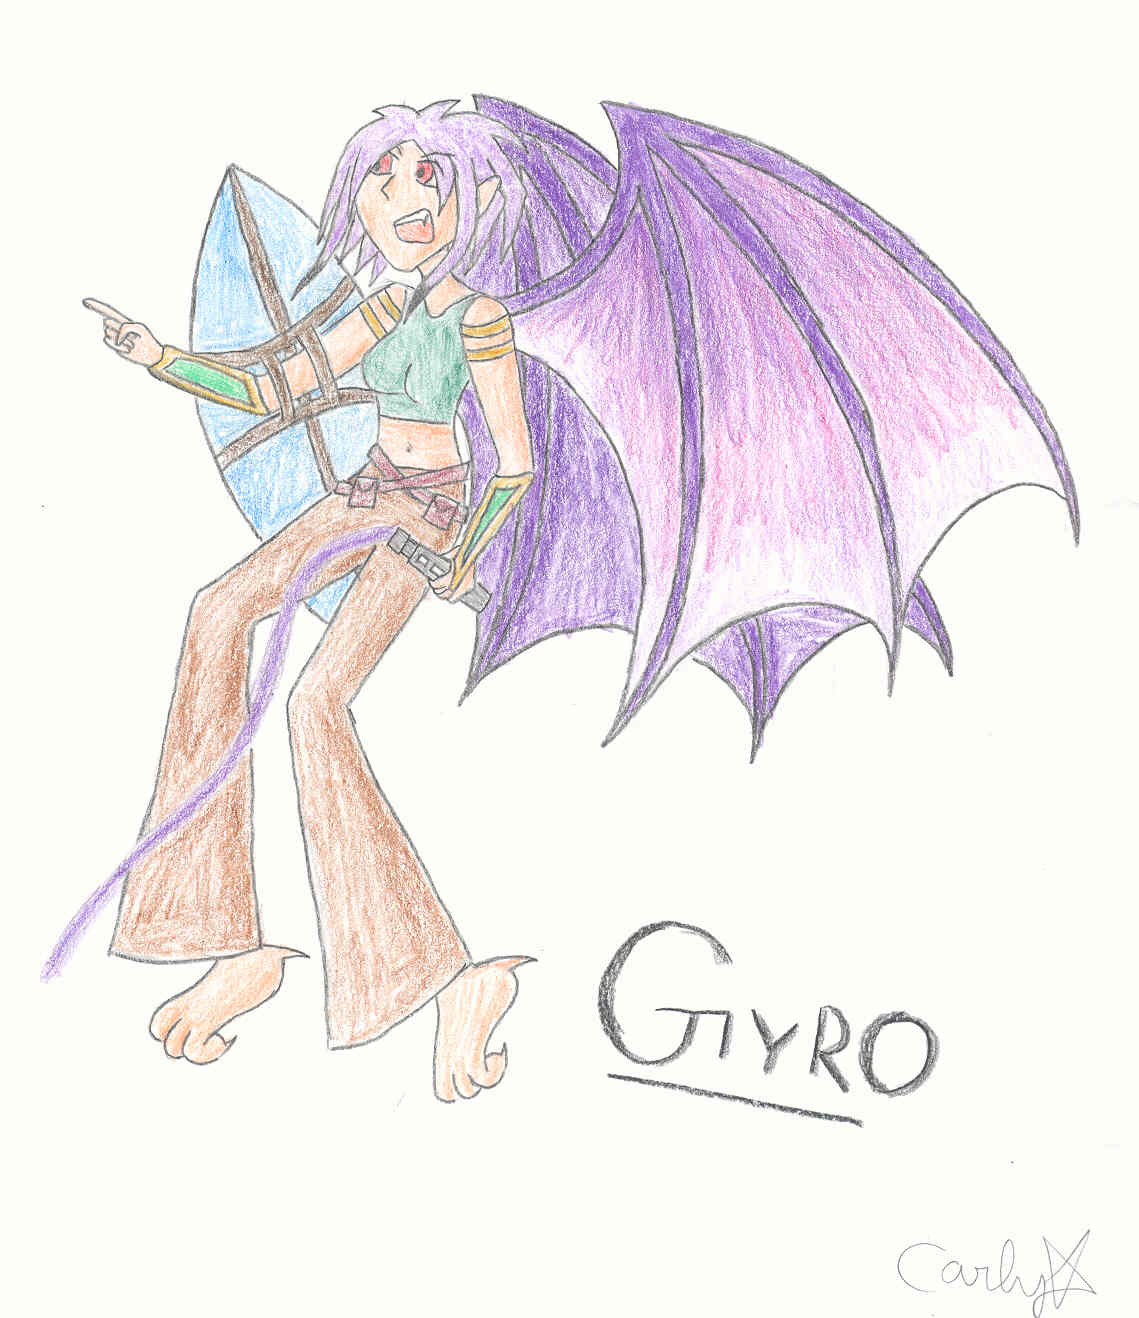 Gyro